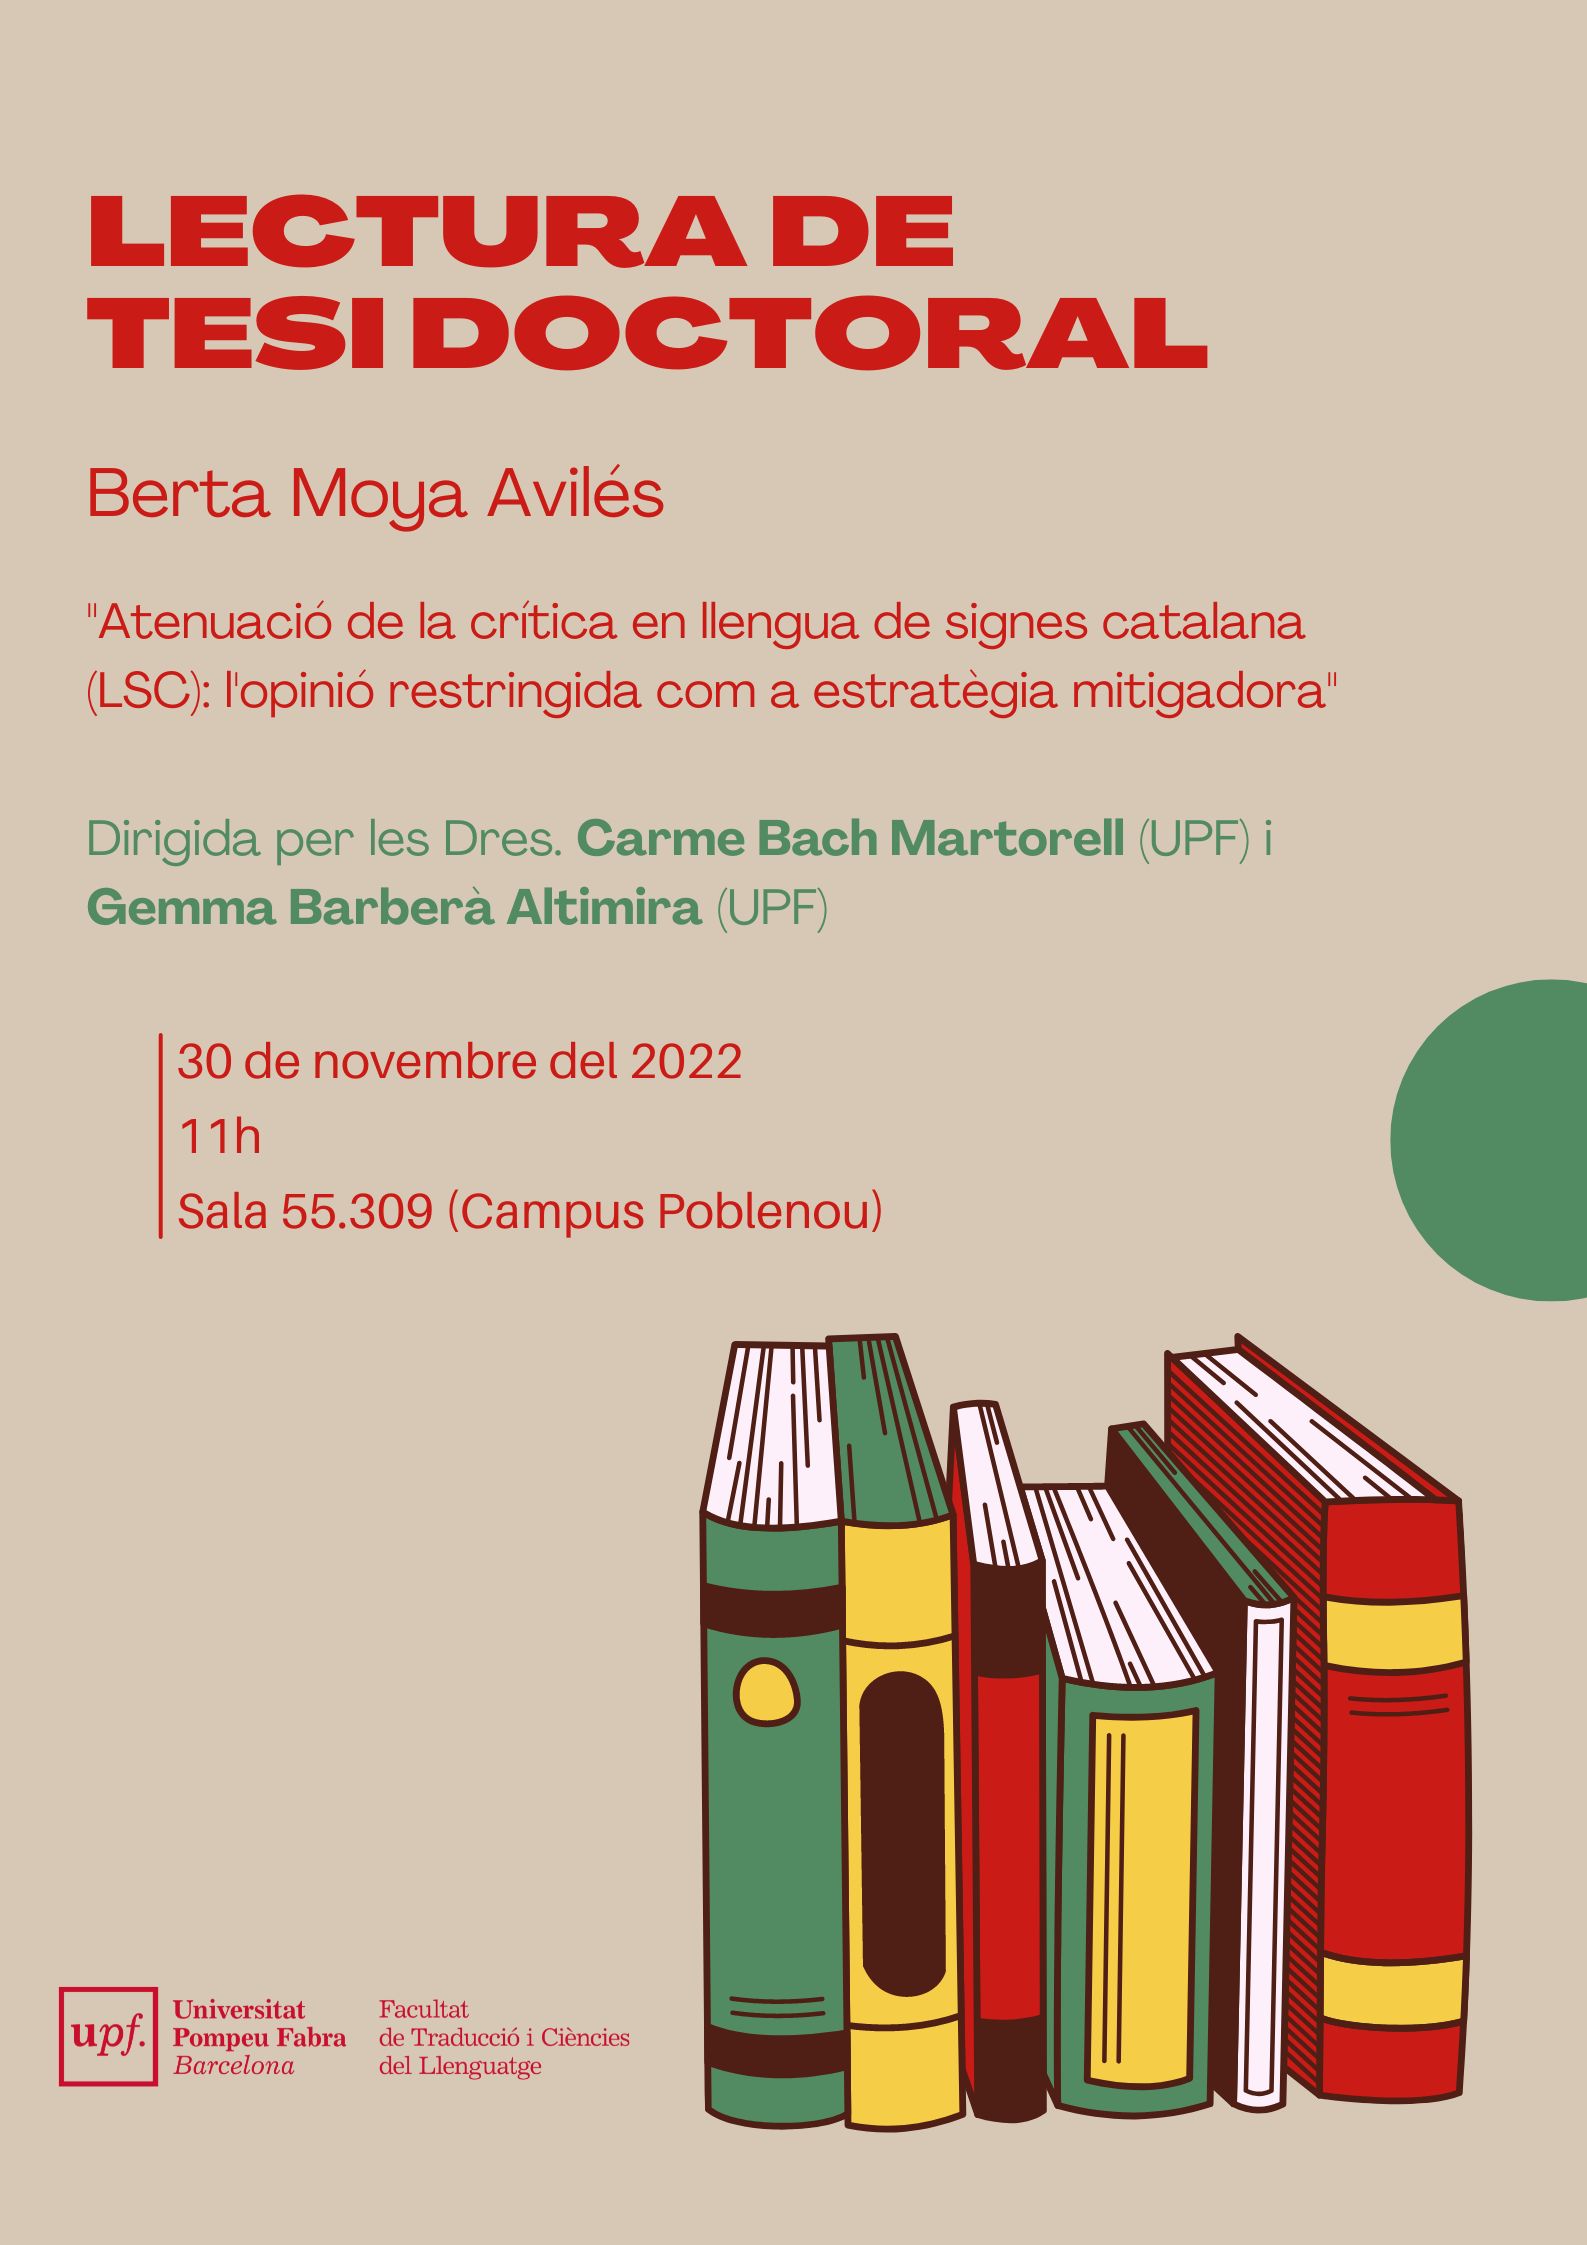 30/11/2022 Lectura de la tesi doctoral de Berta Moya Avilés, a les 11.00 hores